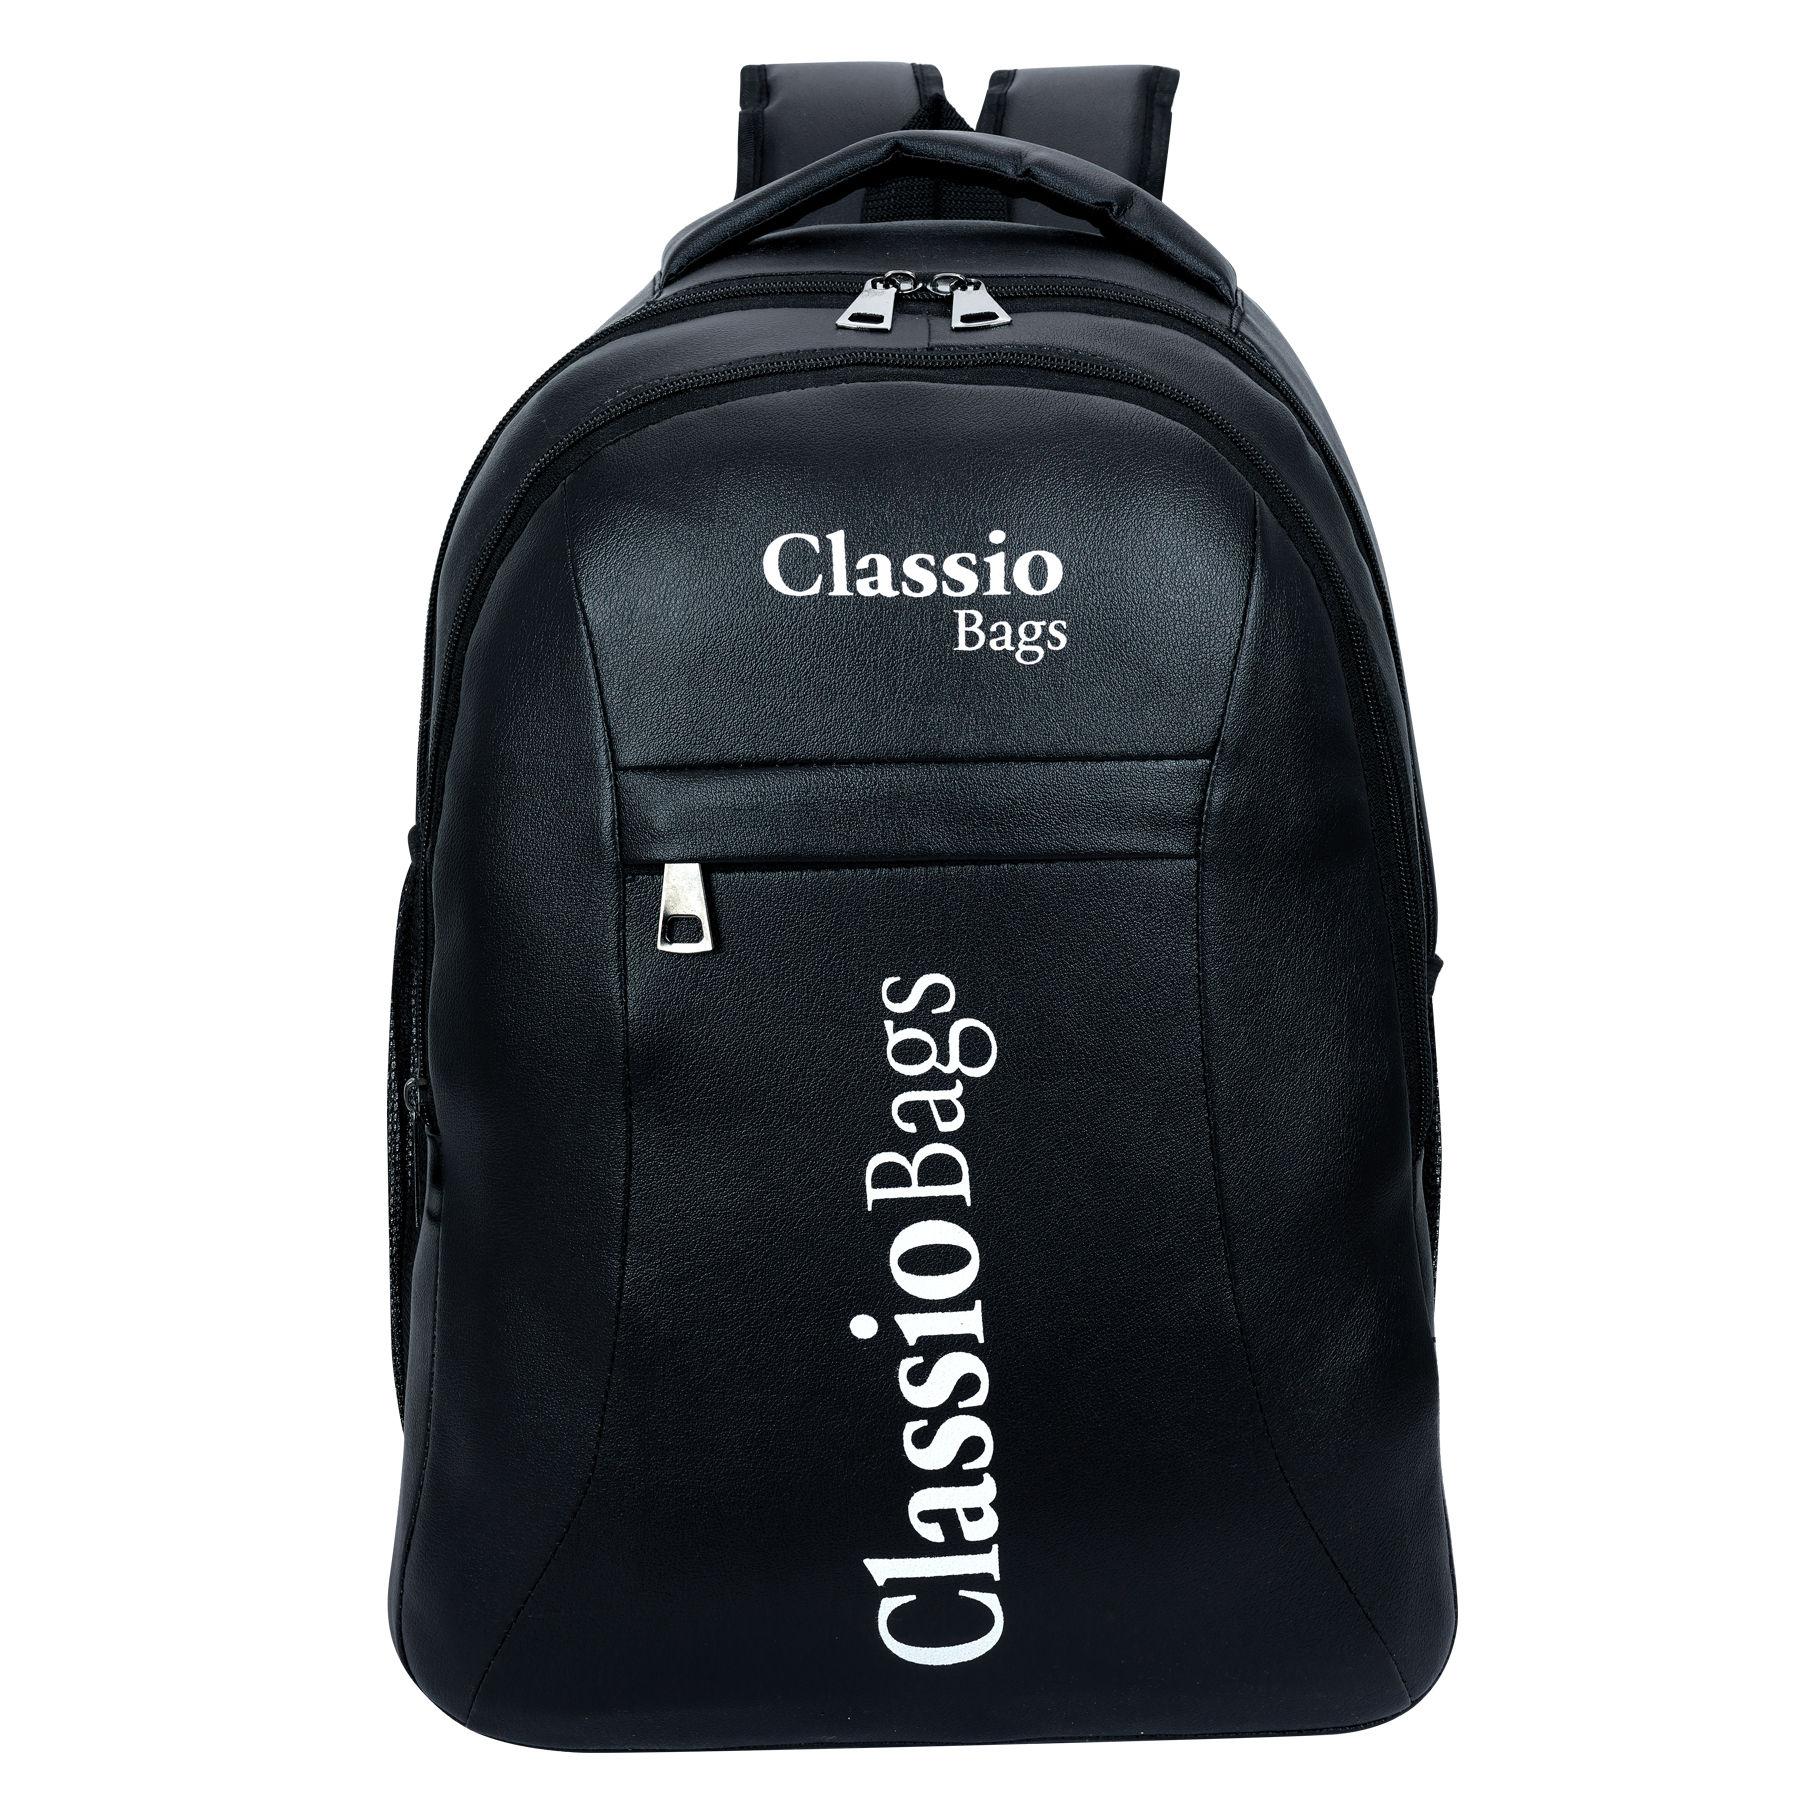 Classio Bags